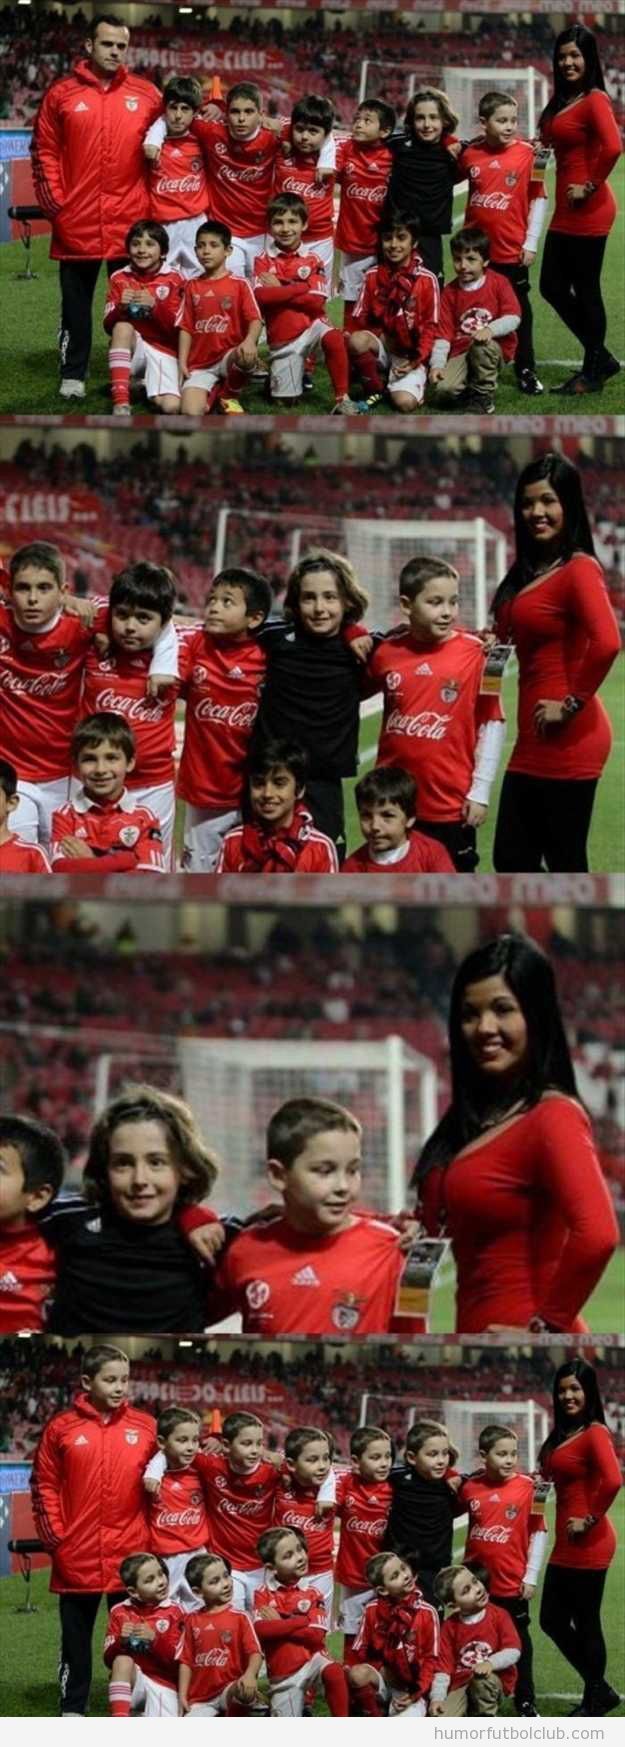 Foto divertida de un grupo de niños de equipo de fútbol, uno mira los pechos de la entrenadora